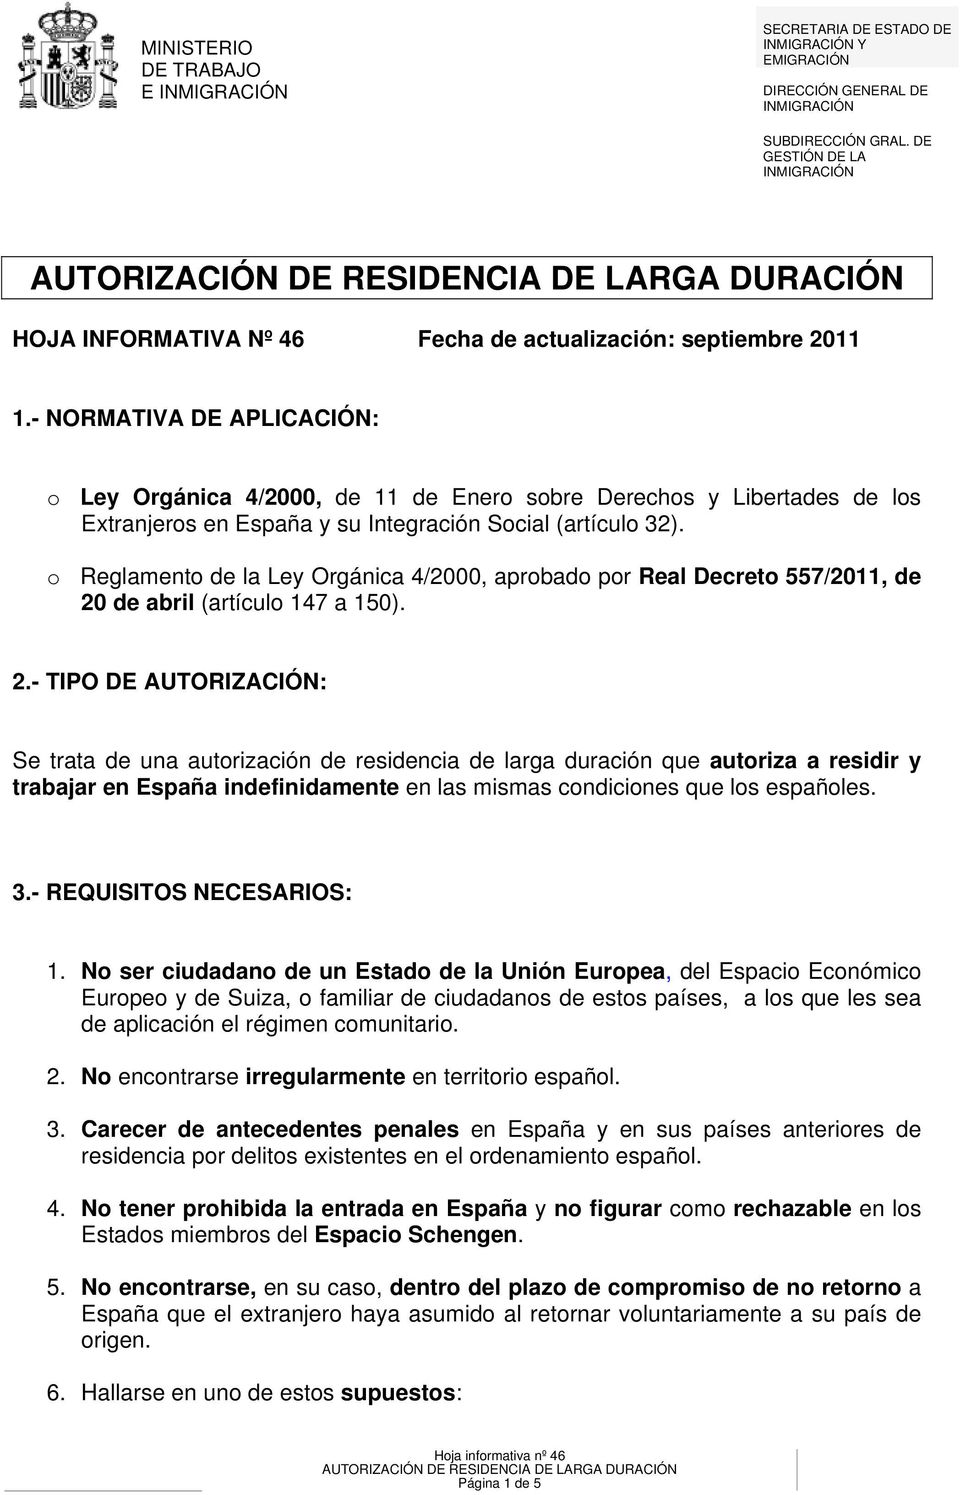 - NORMATIVA DE APLICACIÓN: o Ley Orgánica 4/2000, de 11 de Enero sobre Derechos y Libertades de los Extranjeros en España y su Integración Social (artículo 32).